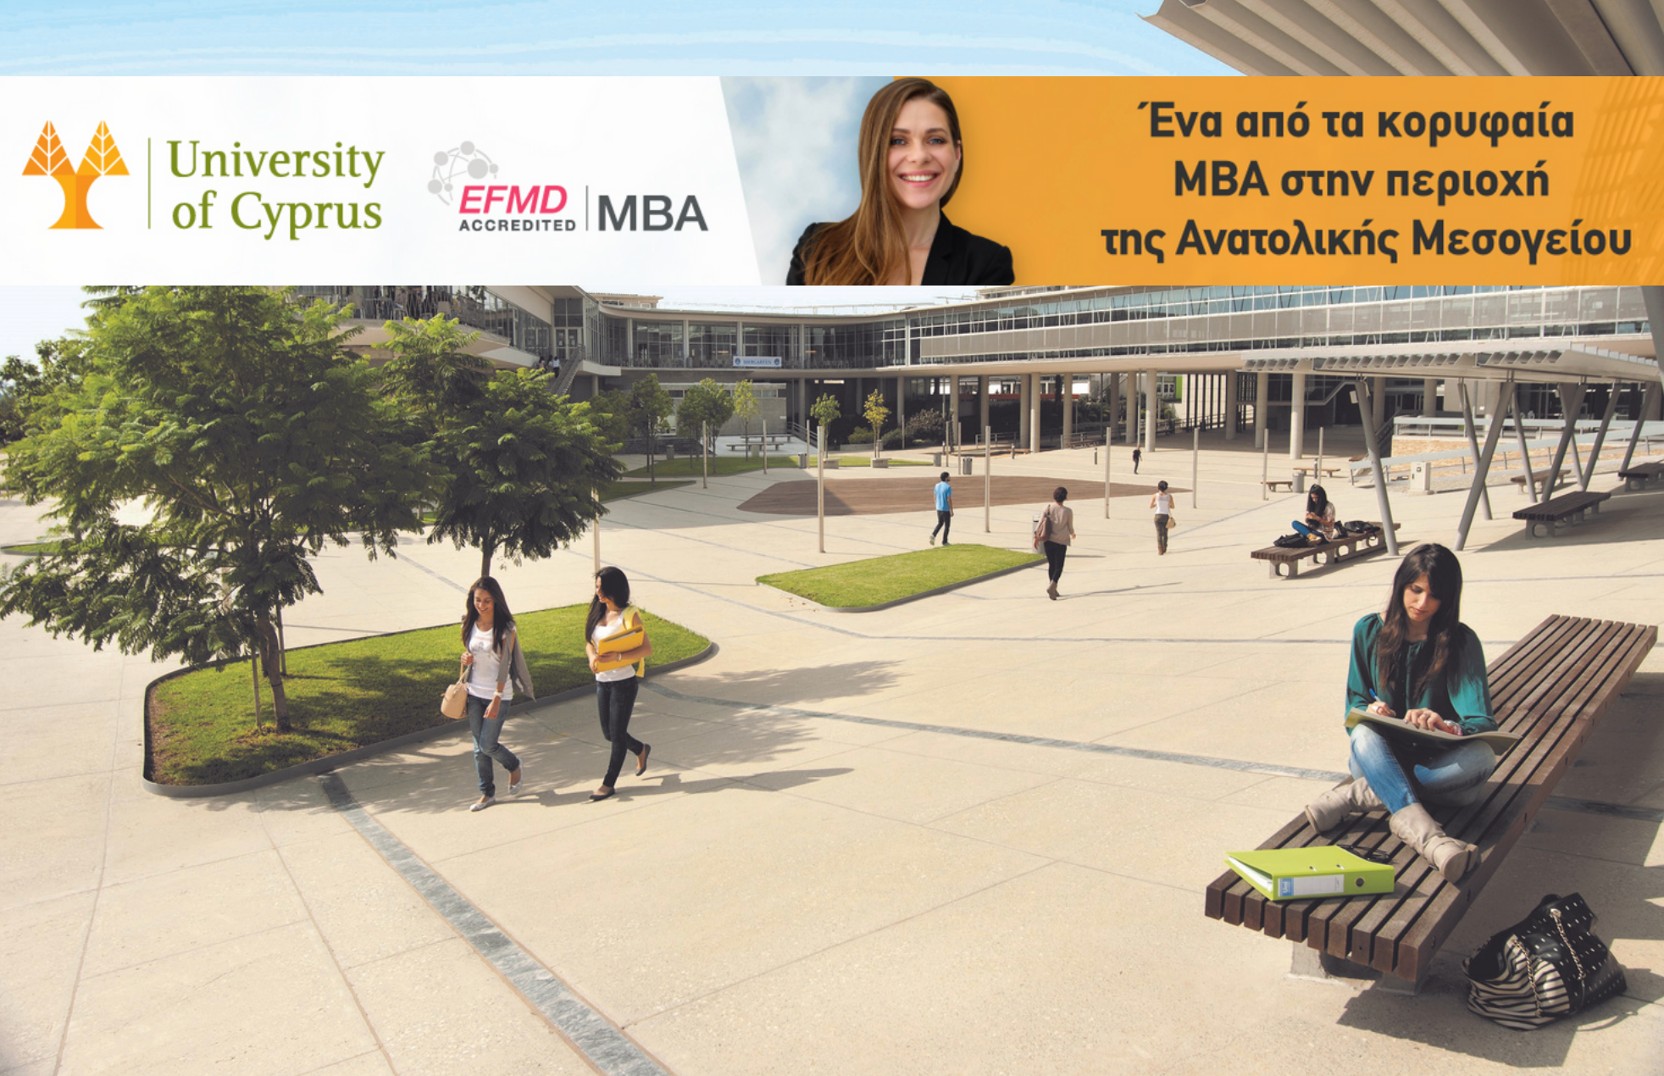  Προκηρύχθηκε το πρόγραμμα MBA (2022-2023) του Πανεπιστημίου Κύπρου / ΑΙΤΗΣΕΙΣ